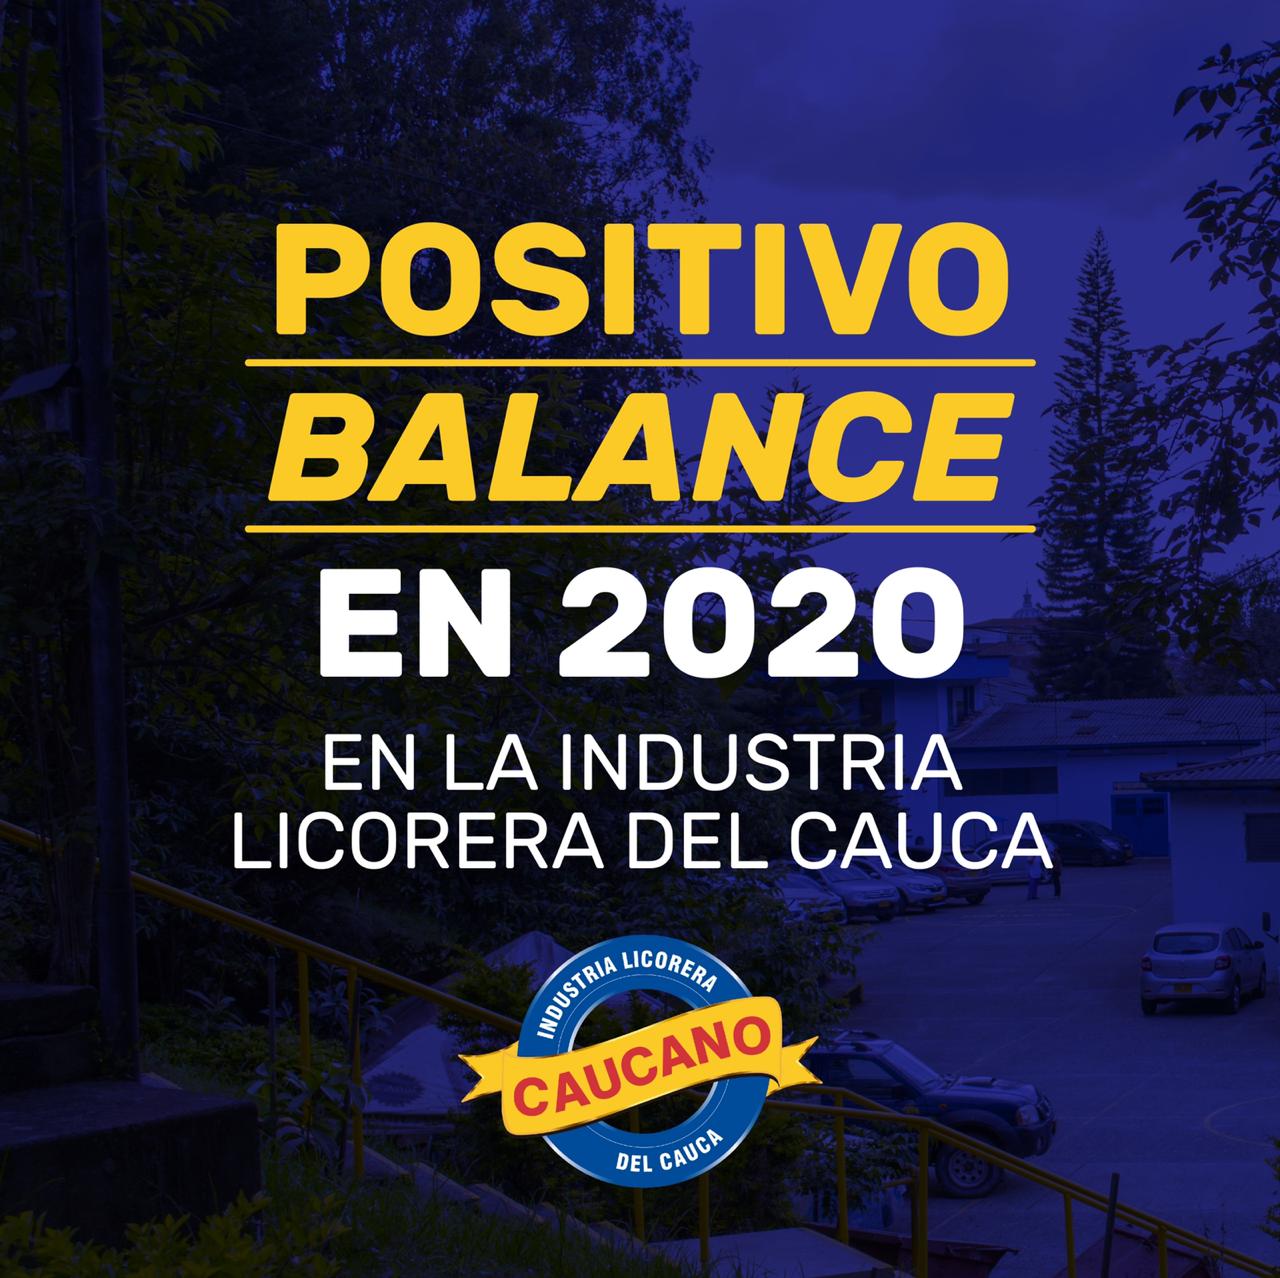                                              Positivo balance en 2020 en la Industria Licorera del Cauca
                                            